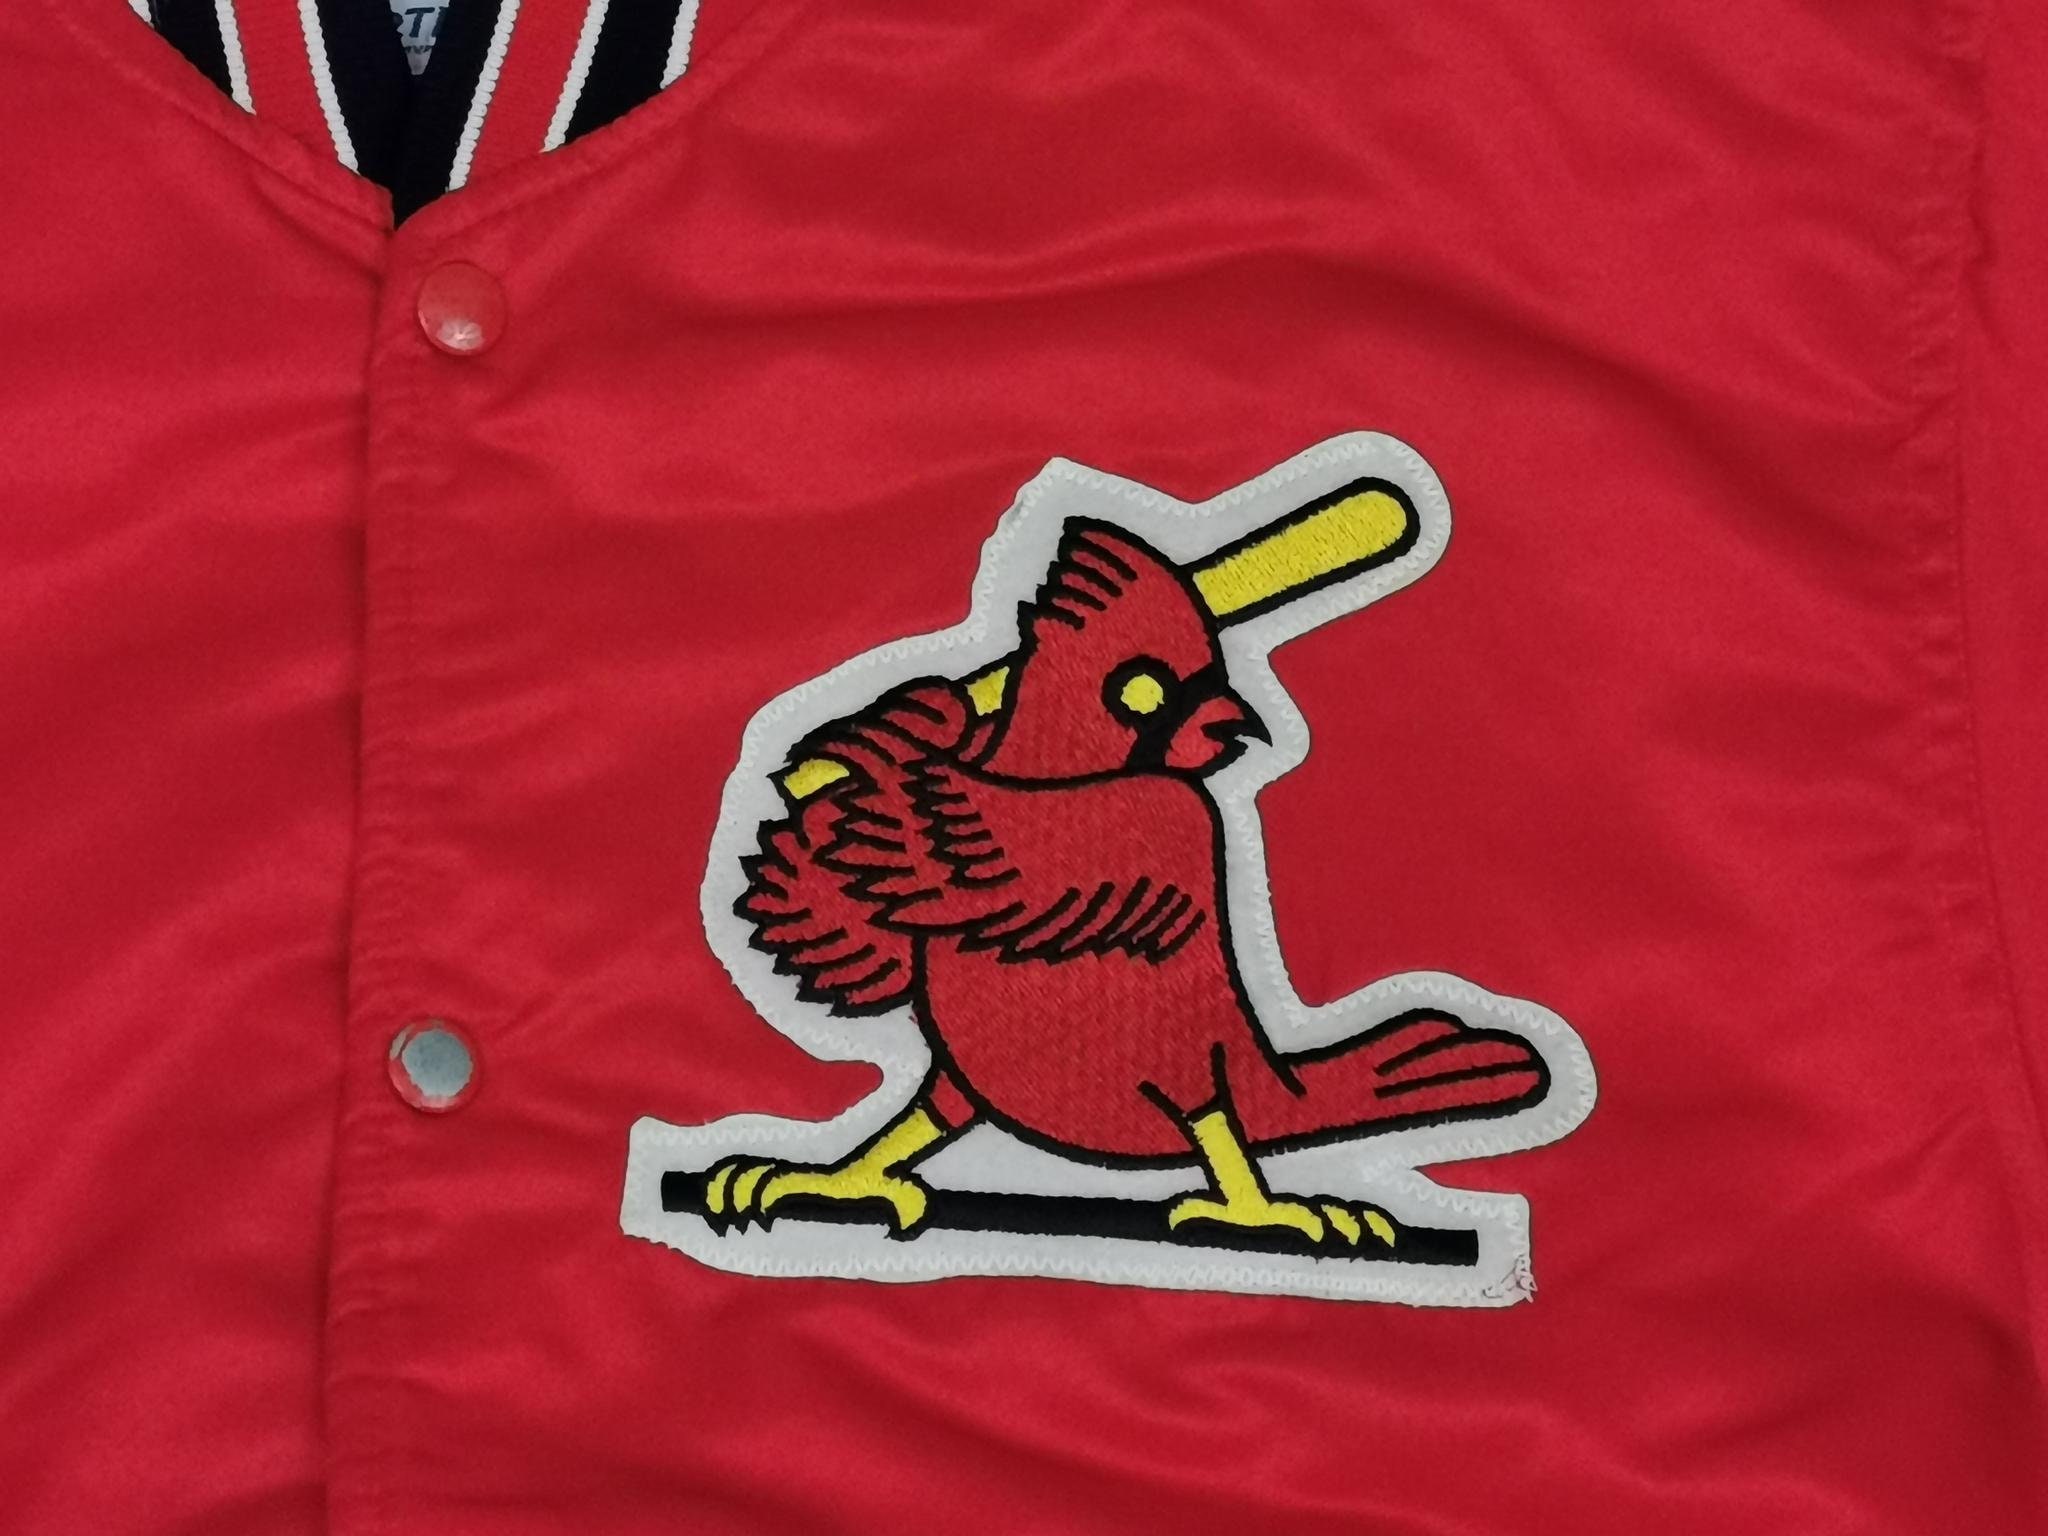 Starter Usa Jacket Baseball St. Louis Cardinals Redbirds 